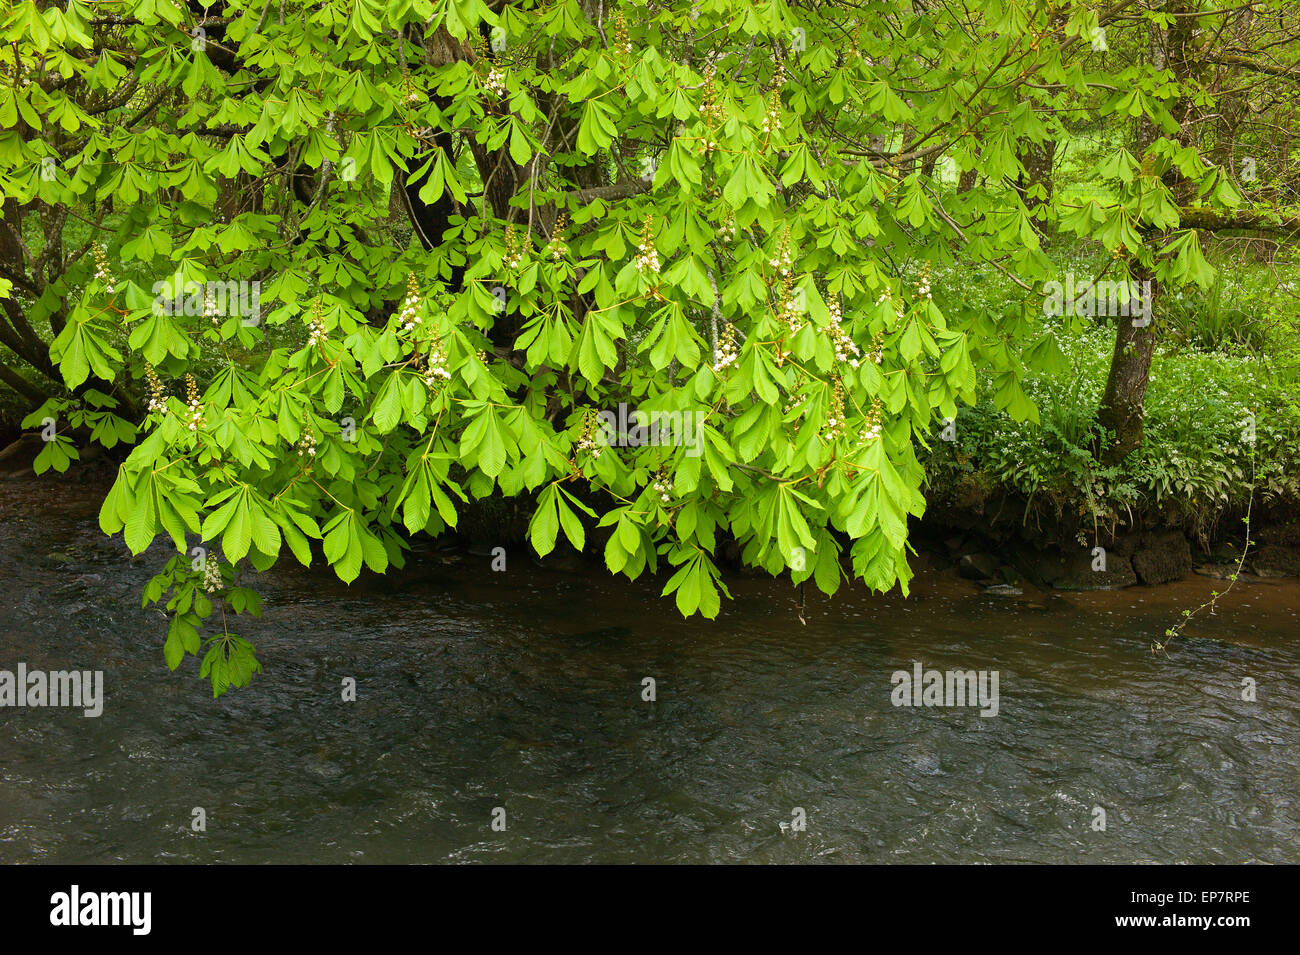 Nouveau feuillage et fleurs de printemps sur un arbre Marronnier - Aesculus hippocastanum, sur les rives de la rivière Harborne, Devon Banque D'Images